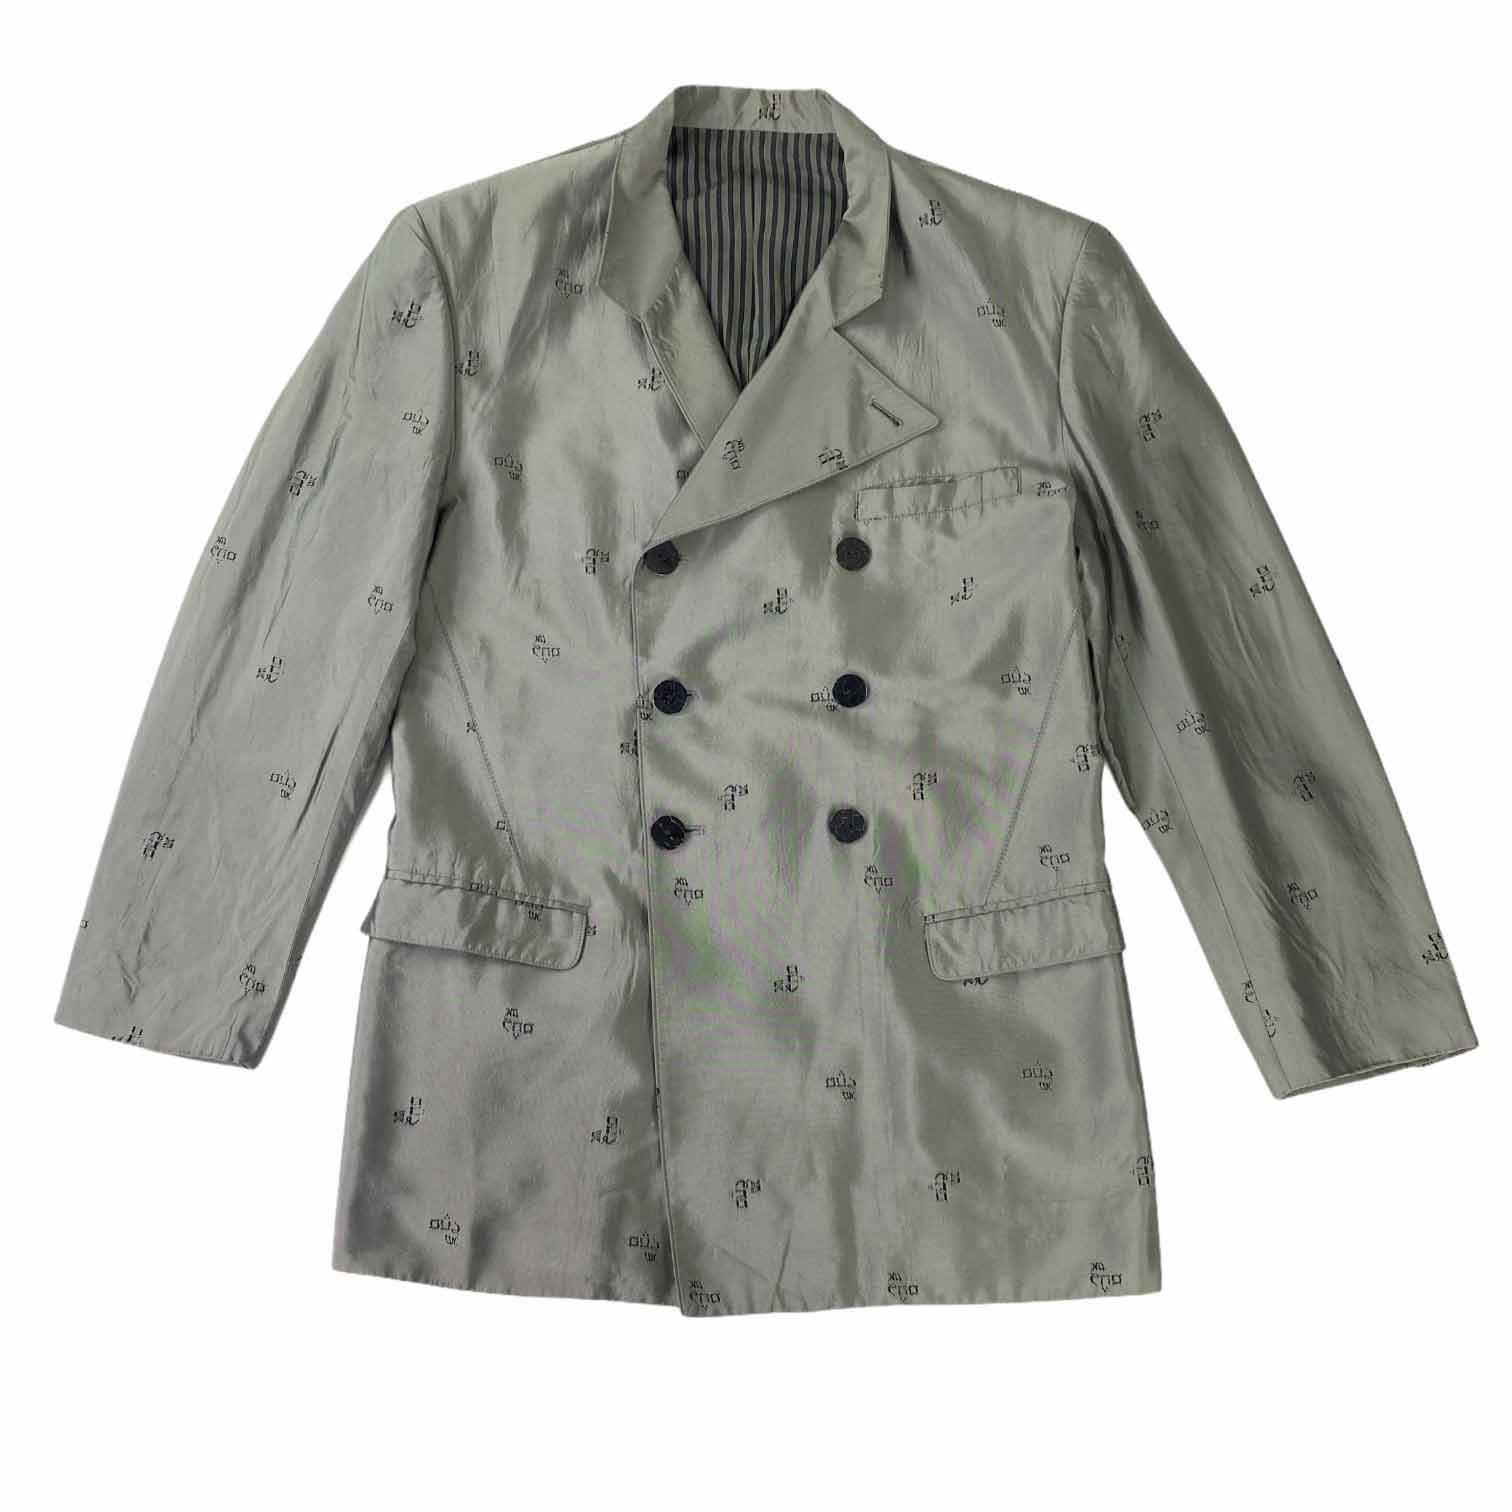 [Jean Paul Gaultier] Silver Monogram Jacket - Size 48